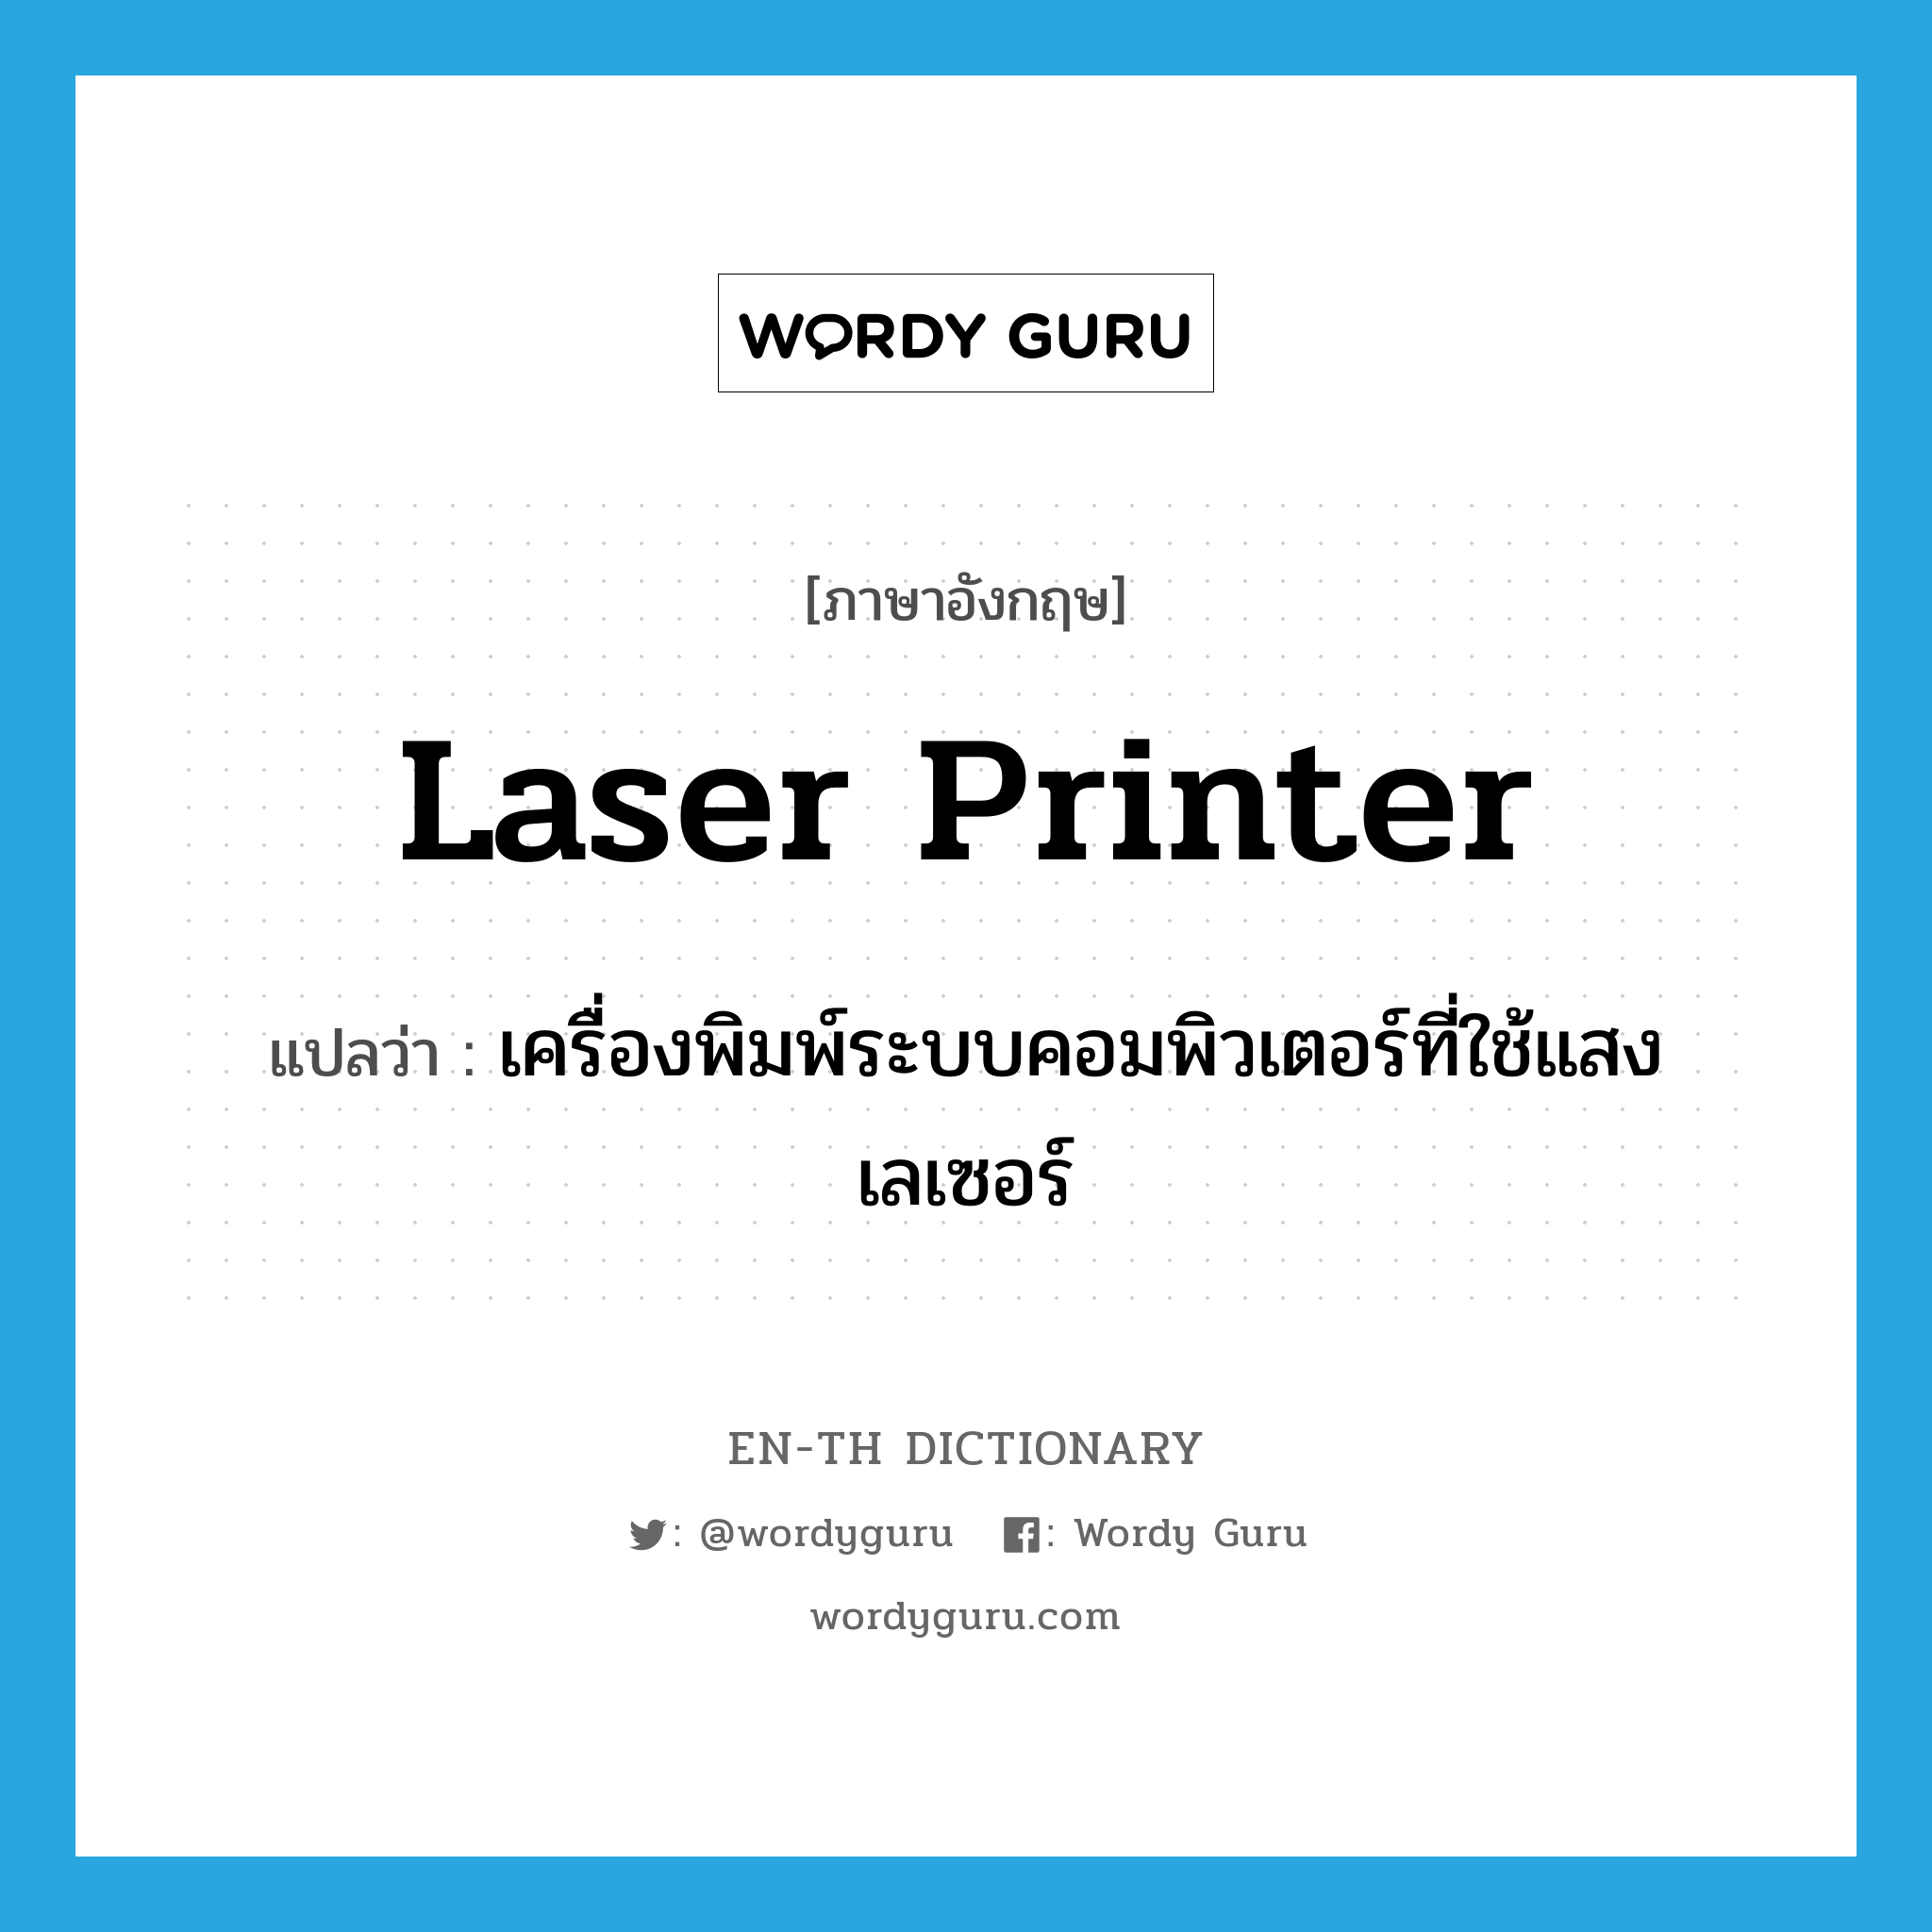 laser printer แปลว่า?, คำศัพท์ภาษาอังกฤษ laser printer แปลว่า เครื่องพิมพ์ระบบคอมพิวเตอร์ที่ใช้แสงเลเซอร์ ประเภท N หมวด N